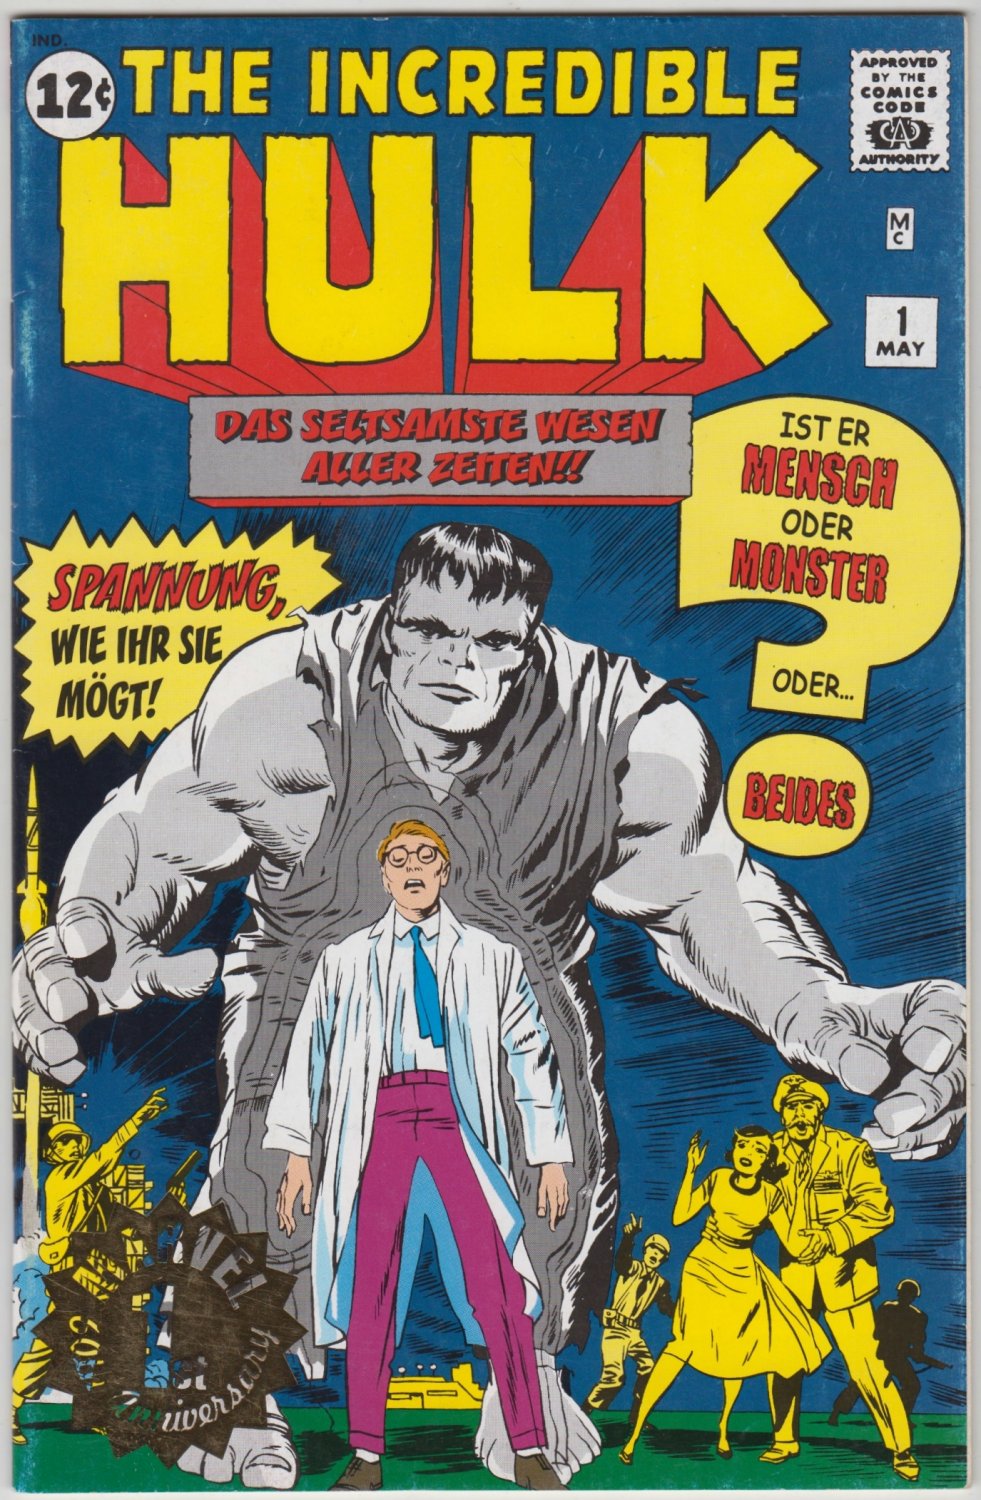 Okładka "Niesamowitego Hulka" z niemieckiego wydania